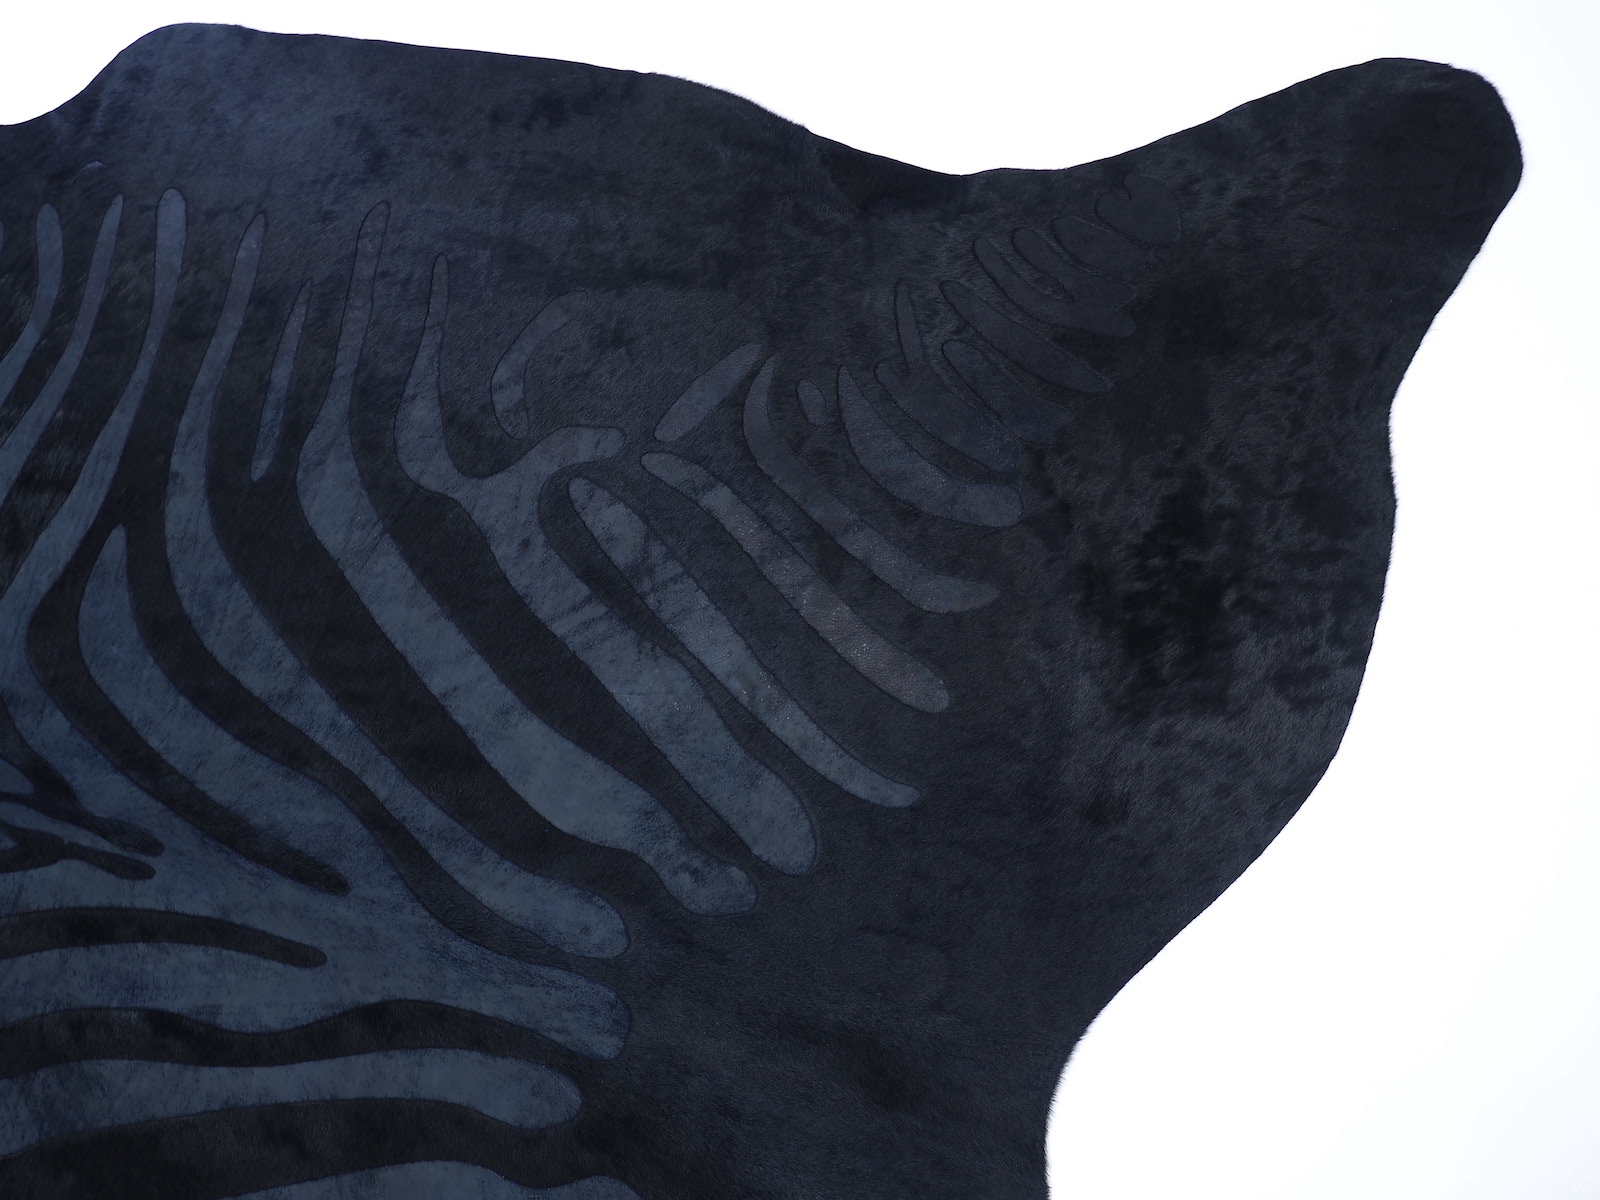  Шкура коровы под Зебру черная на черном арт.: 29039